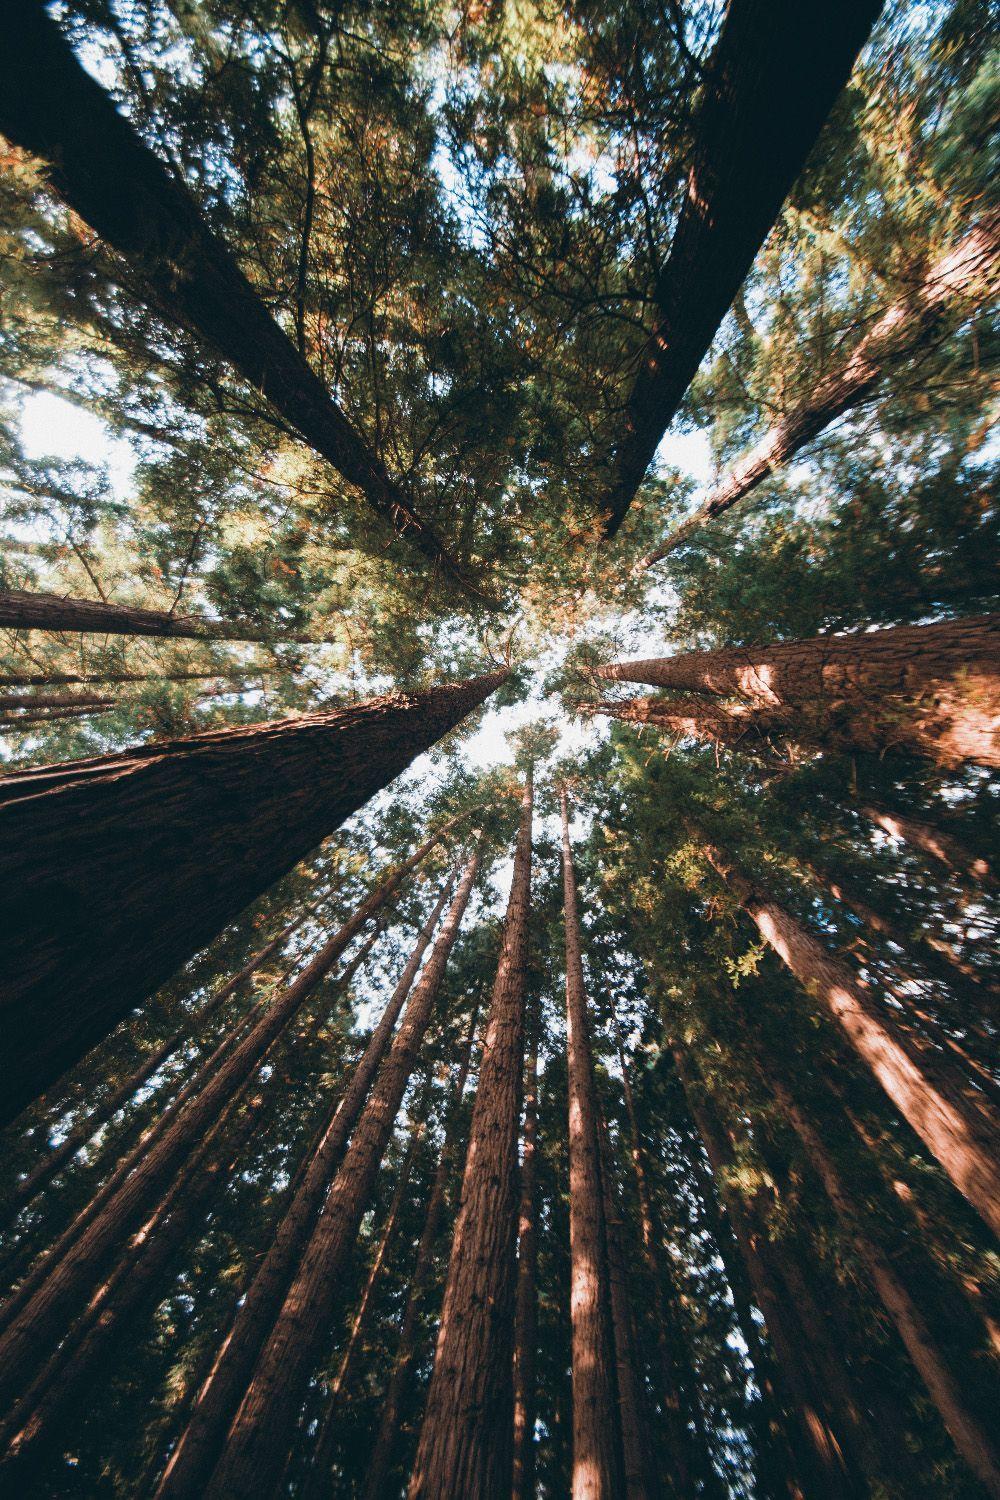 Hình nền rừng Redwood đầy mộng mơ với những cây thông khổng lồ đến tận trời. Cảm giác như đang mô phỏng một chuyến phiêu lưu giữa thiên nhiên hoang dã, nơi con người có thể thực sự thoát khỏi đời sống ồn ào và tìm thấy sự yên bình bên những người thân yêu.